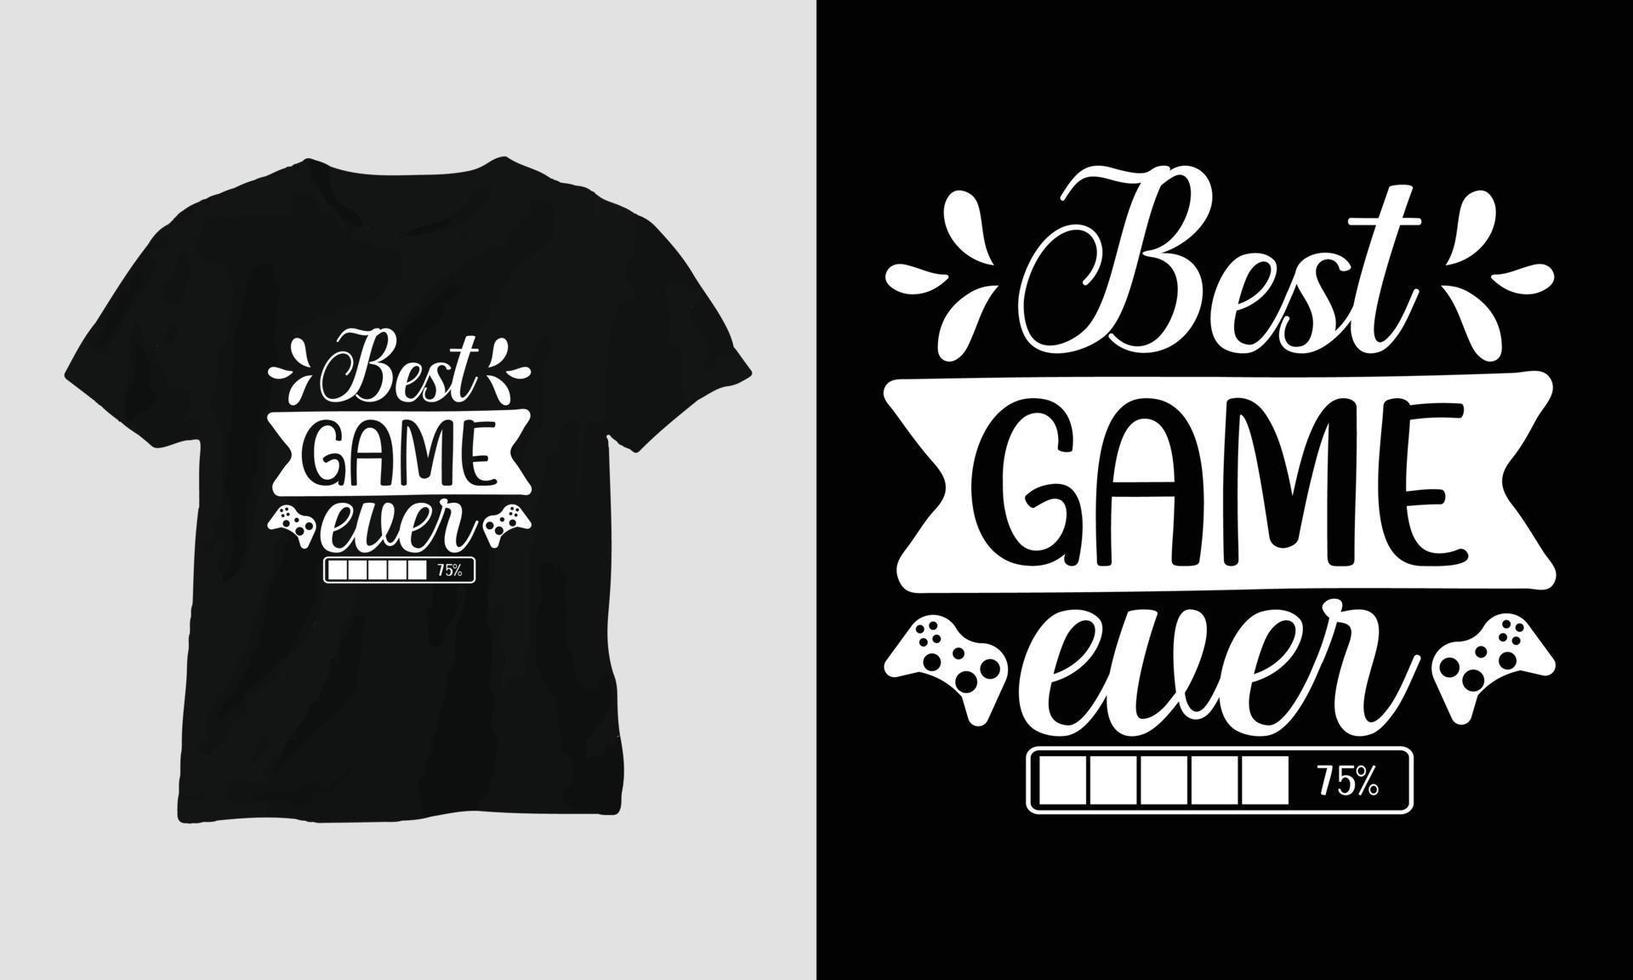 melhor jogo de todos os tempos - design de tipografia de t-shirt e vestuário de citações de jogadores vetor